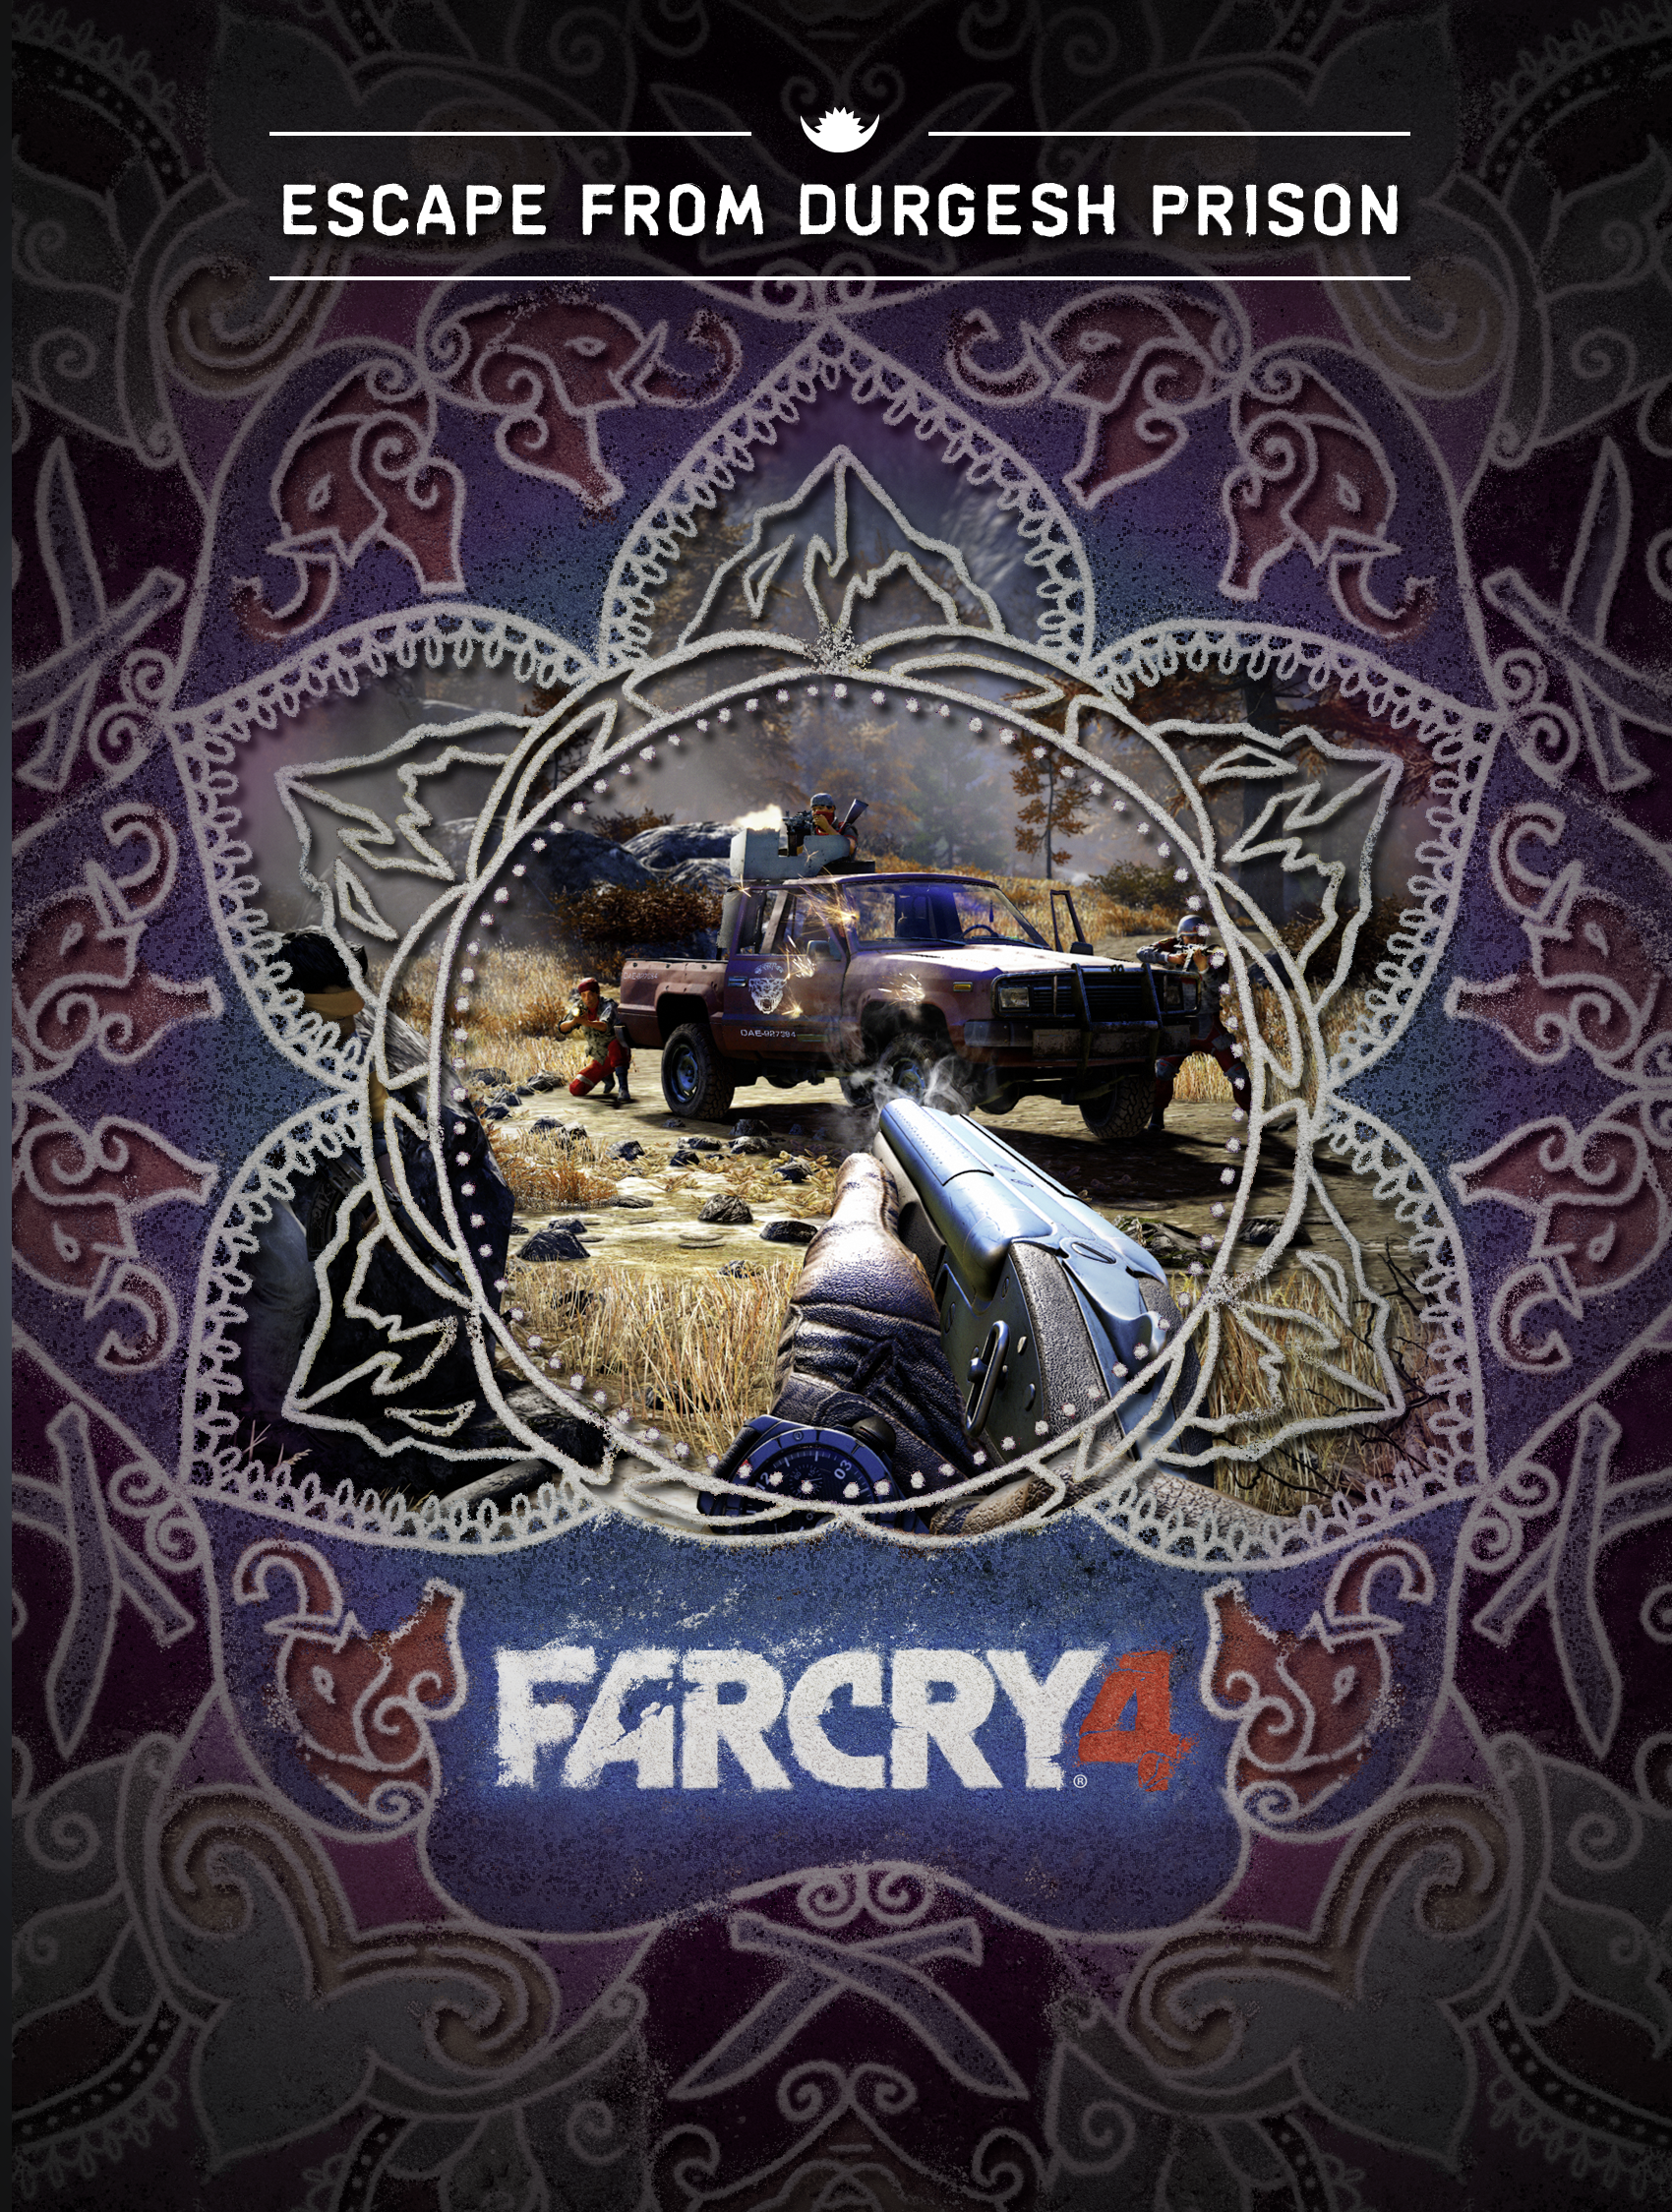 Far Cry 4 Standard Edition Ubisoft Xbox 360 Digital